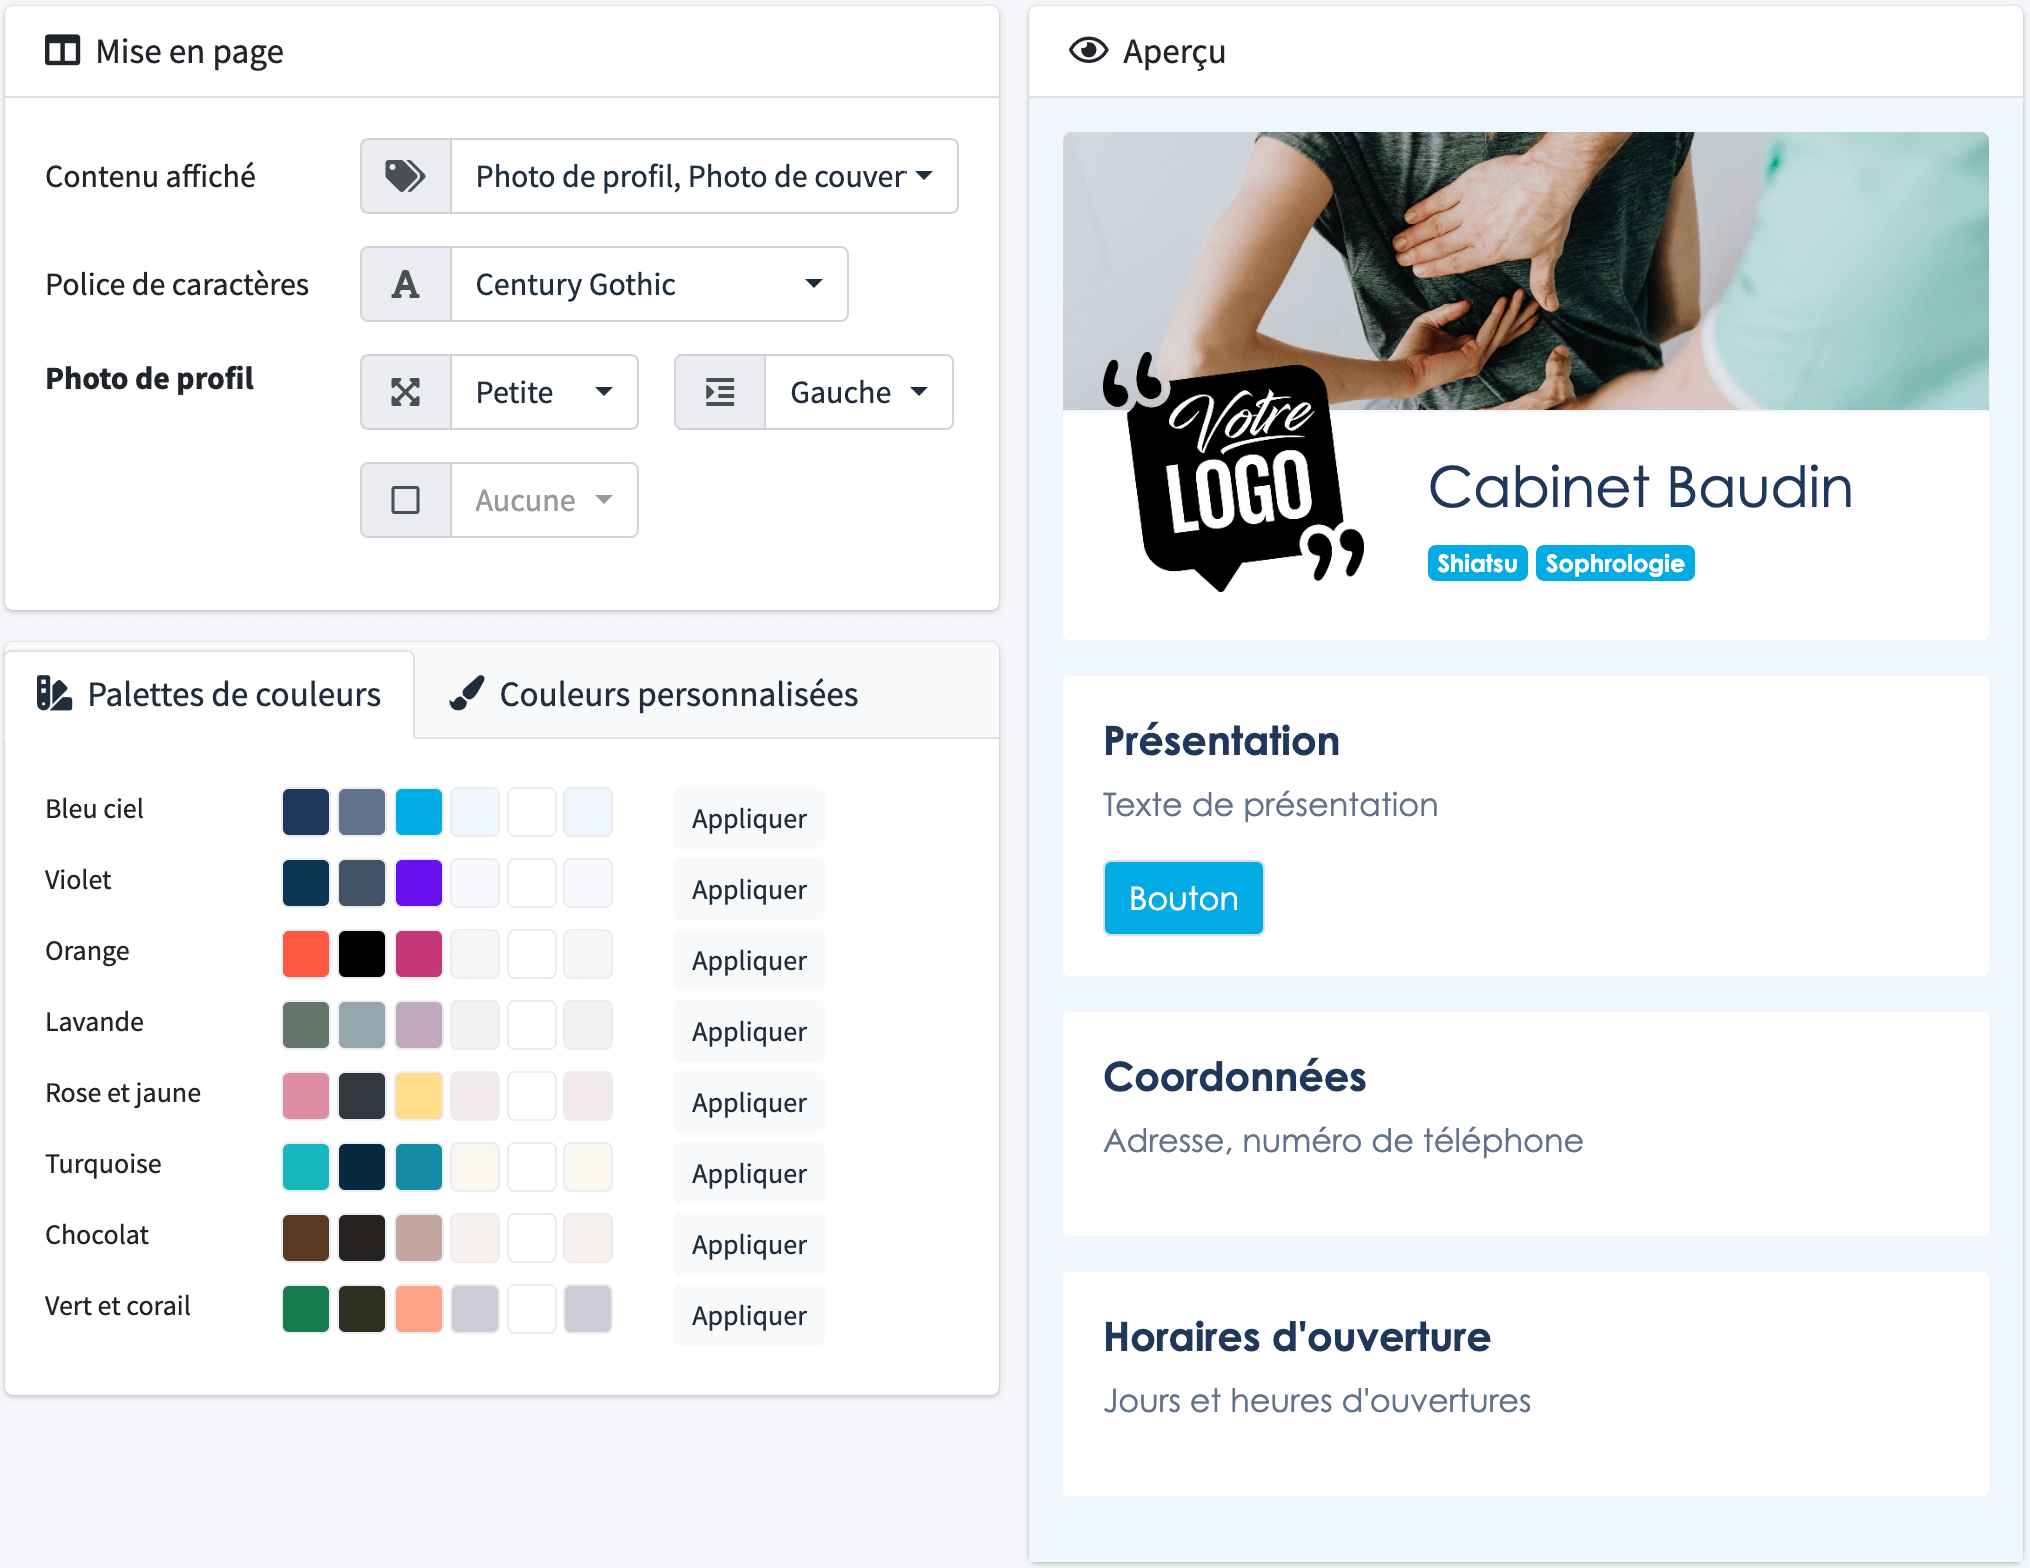 Peronnaliser les couleurs de votre page de présentation